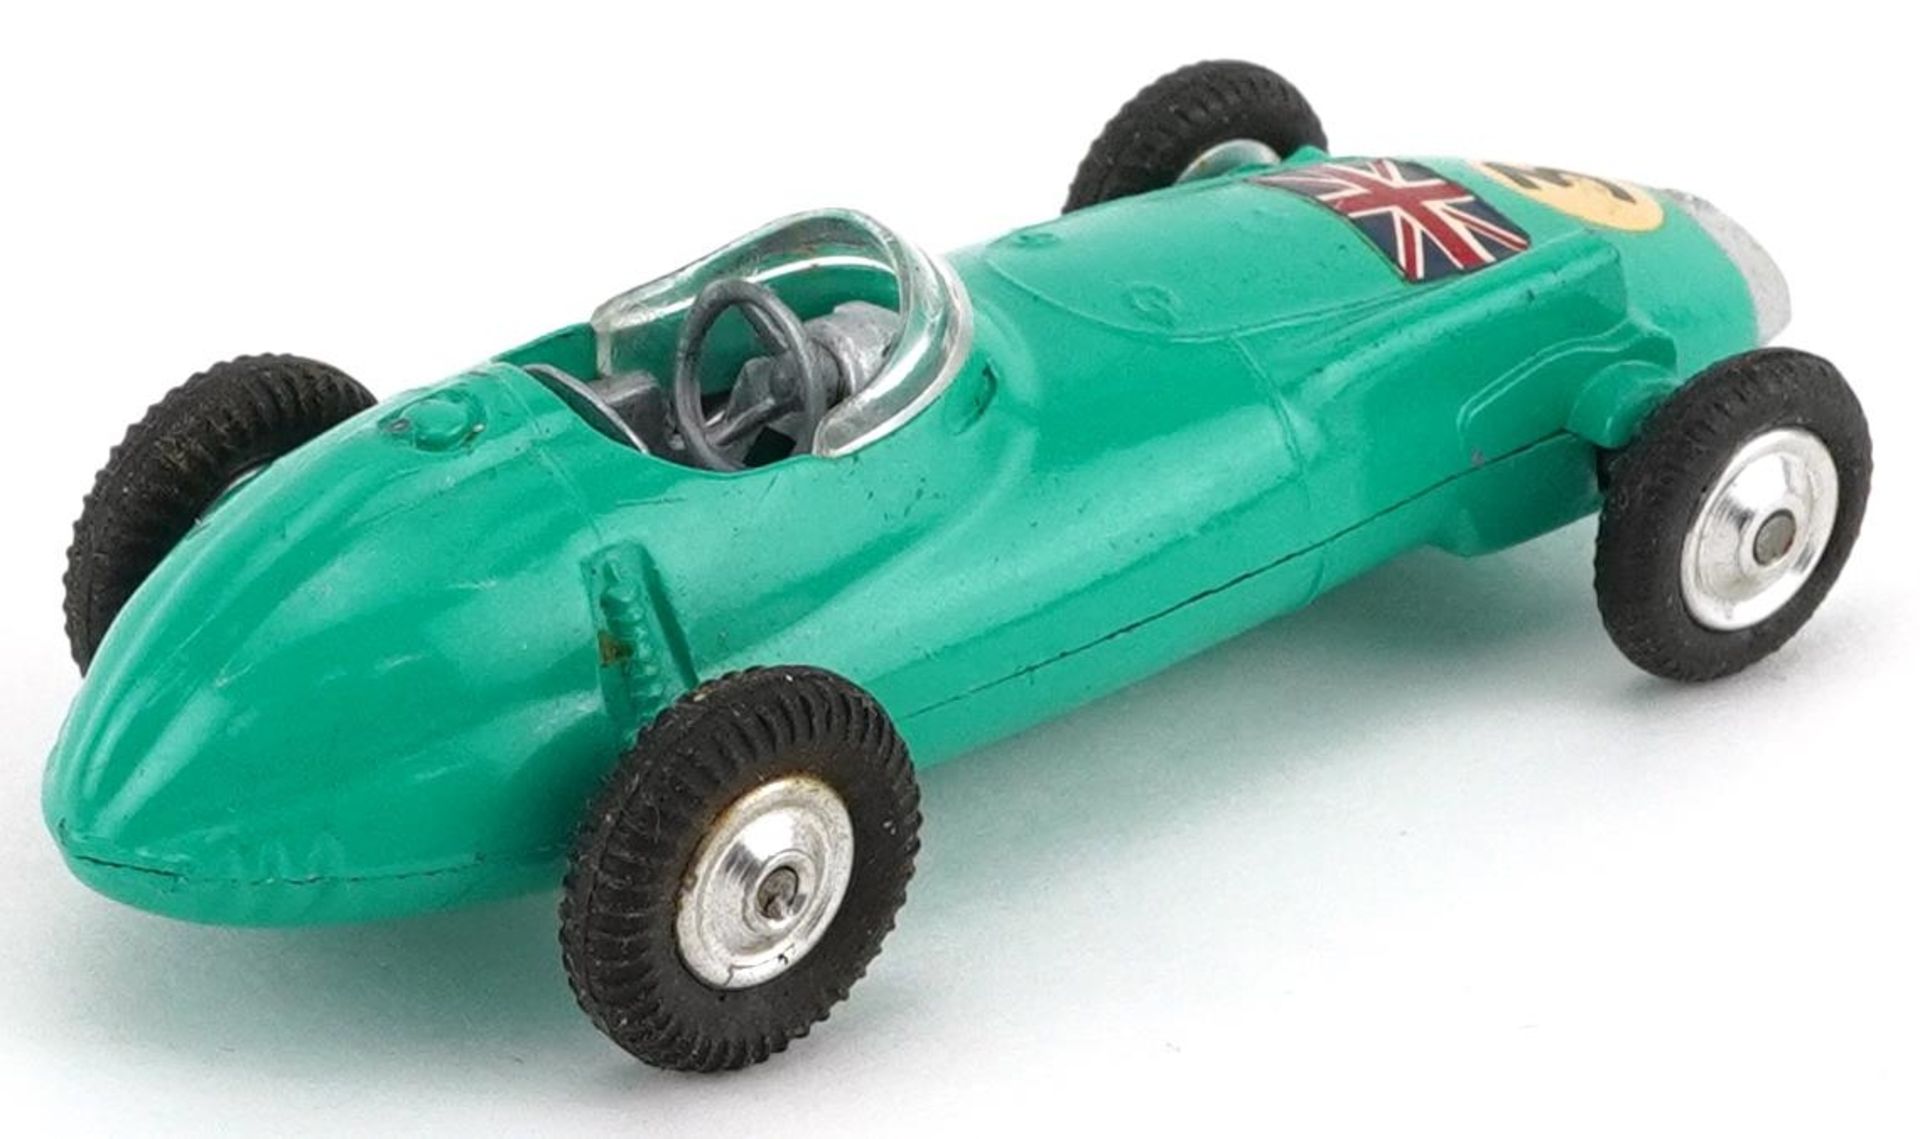 Corgi Toys BRM Formula I Grand Prix diecast racing car with box - Image 3 of 4